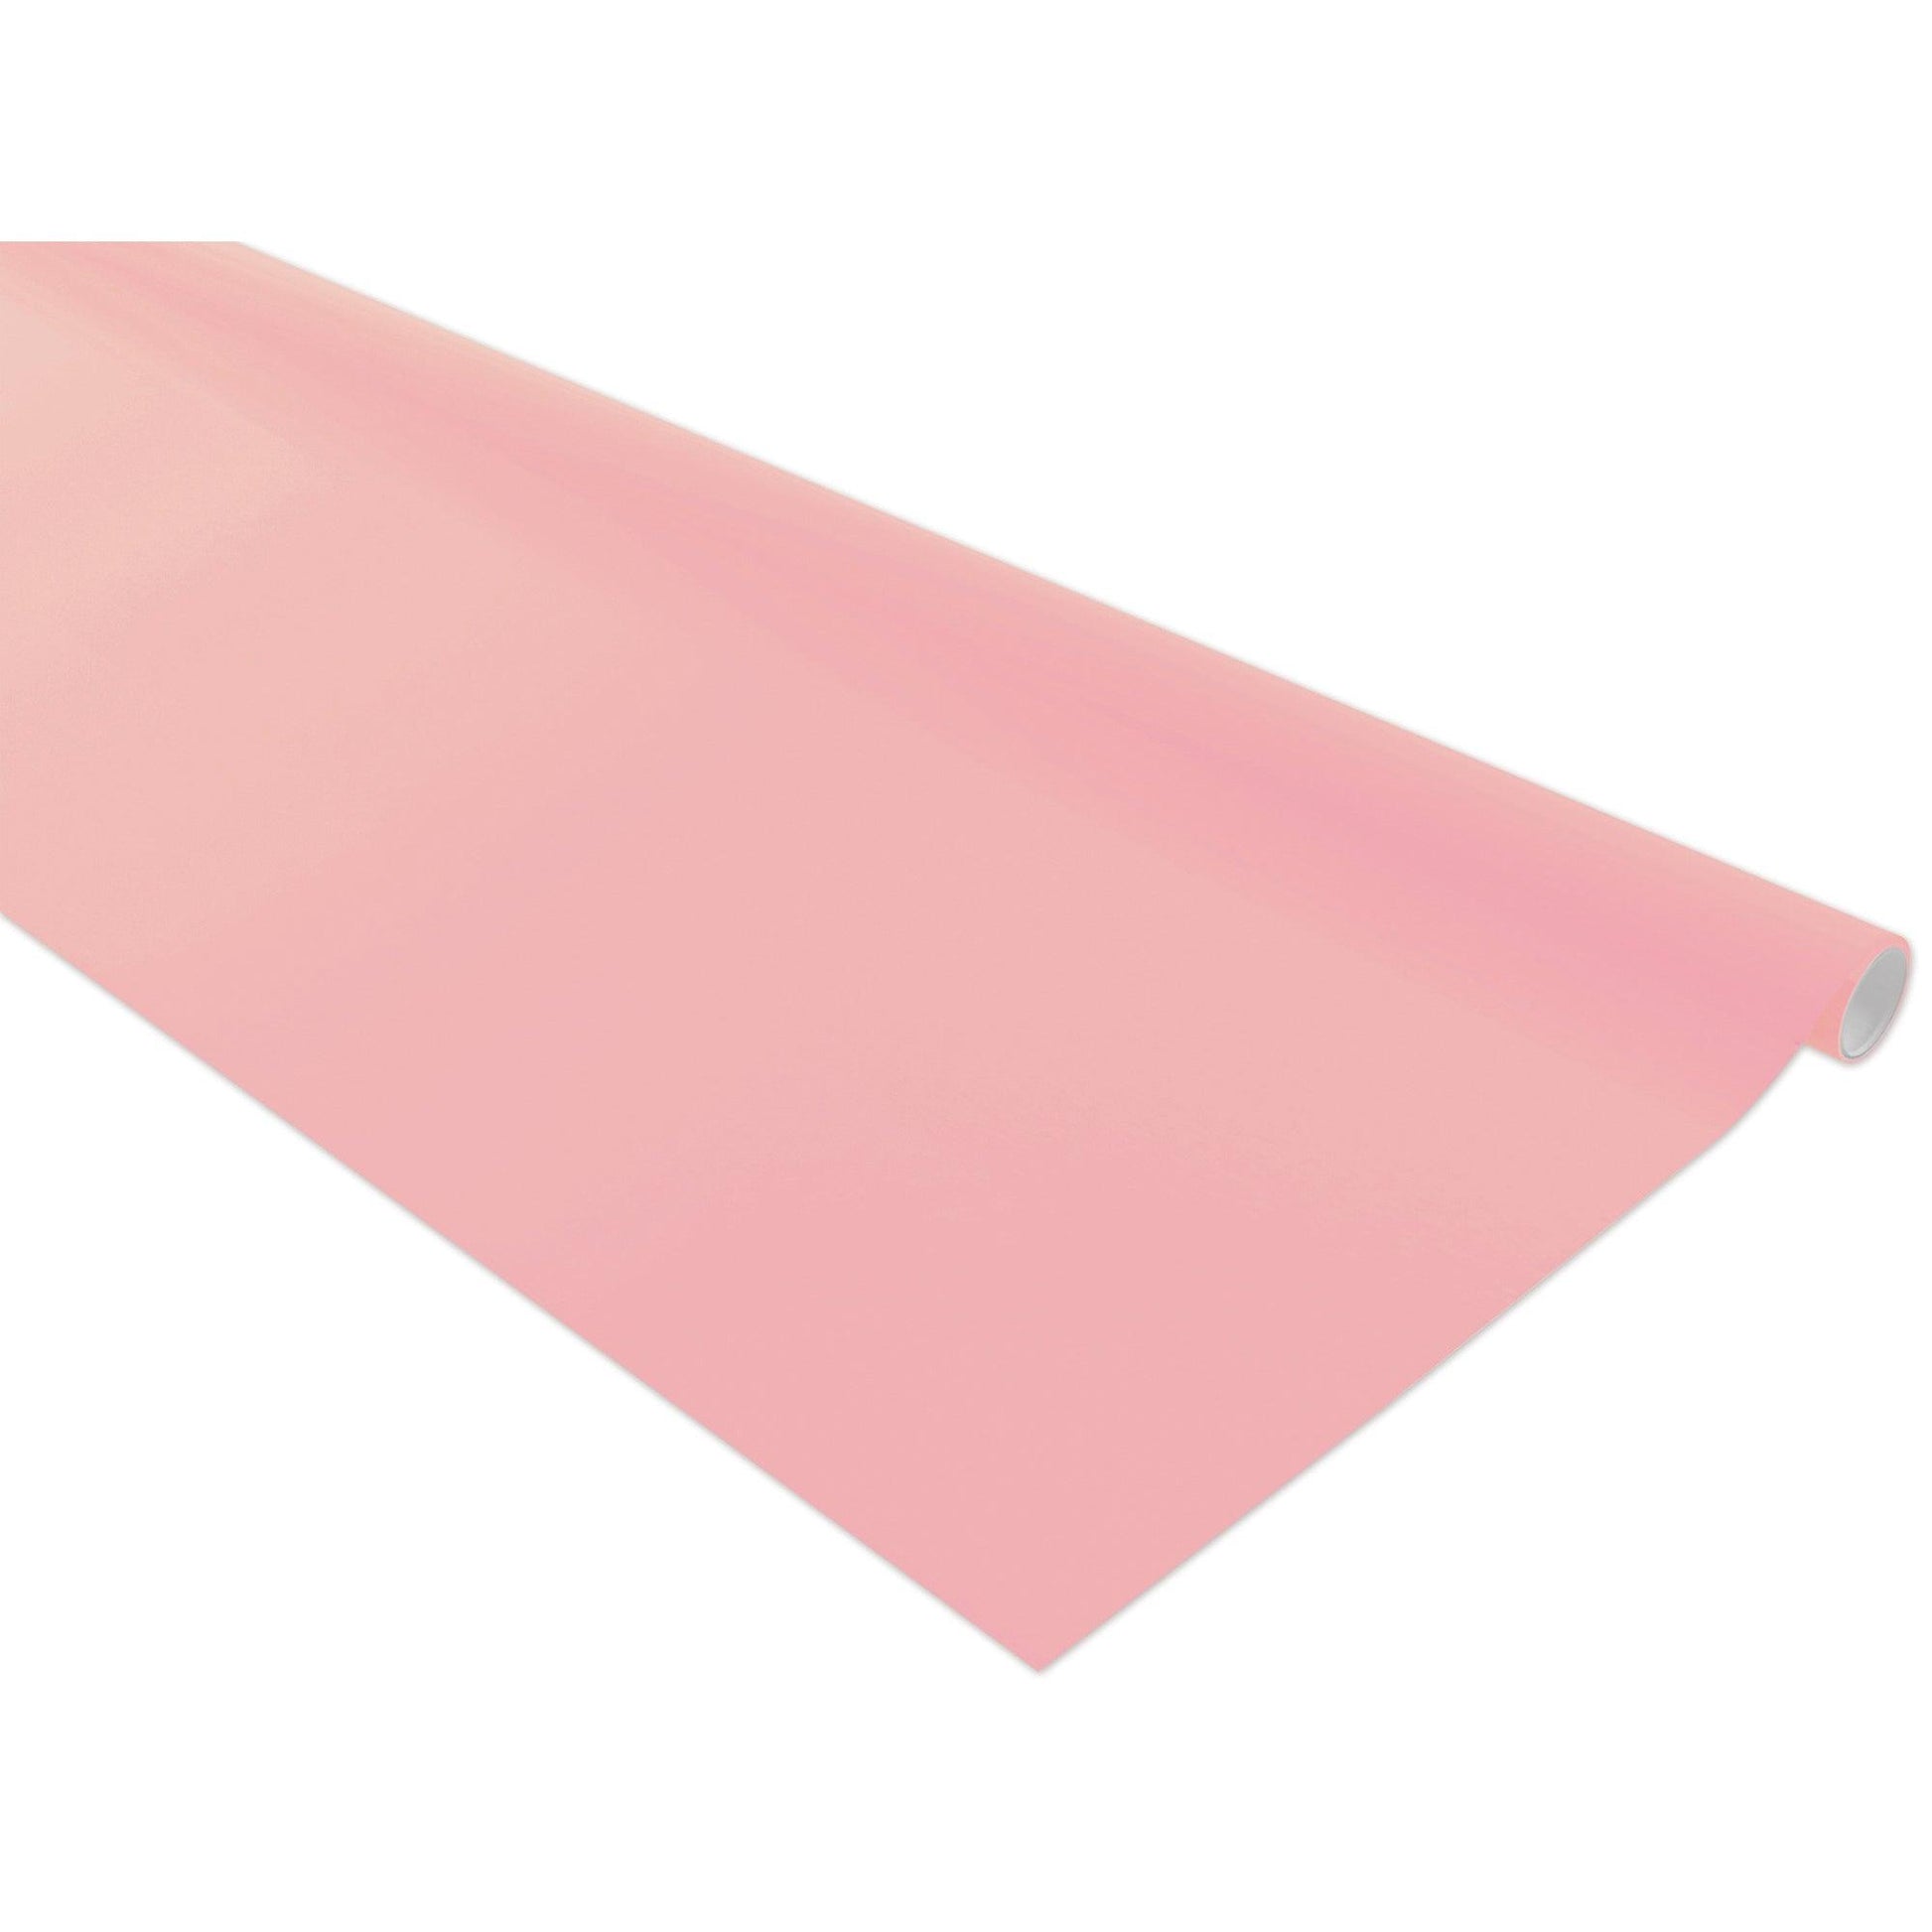 Bulletin Board Art Paper, Pink, 48" x 12', 4 Rolls - Loomini